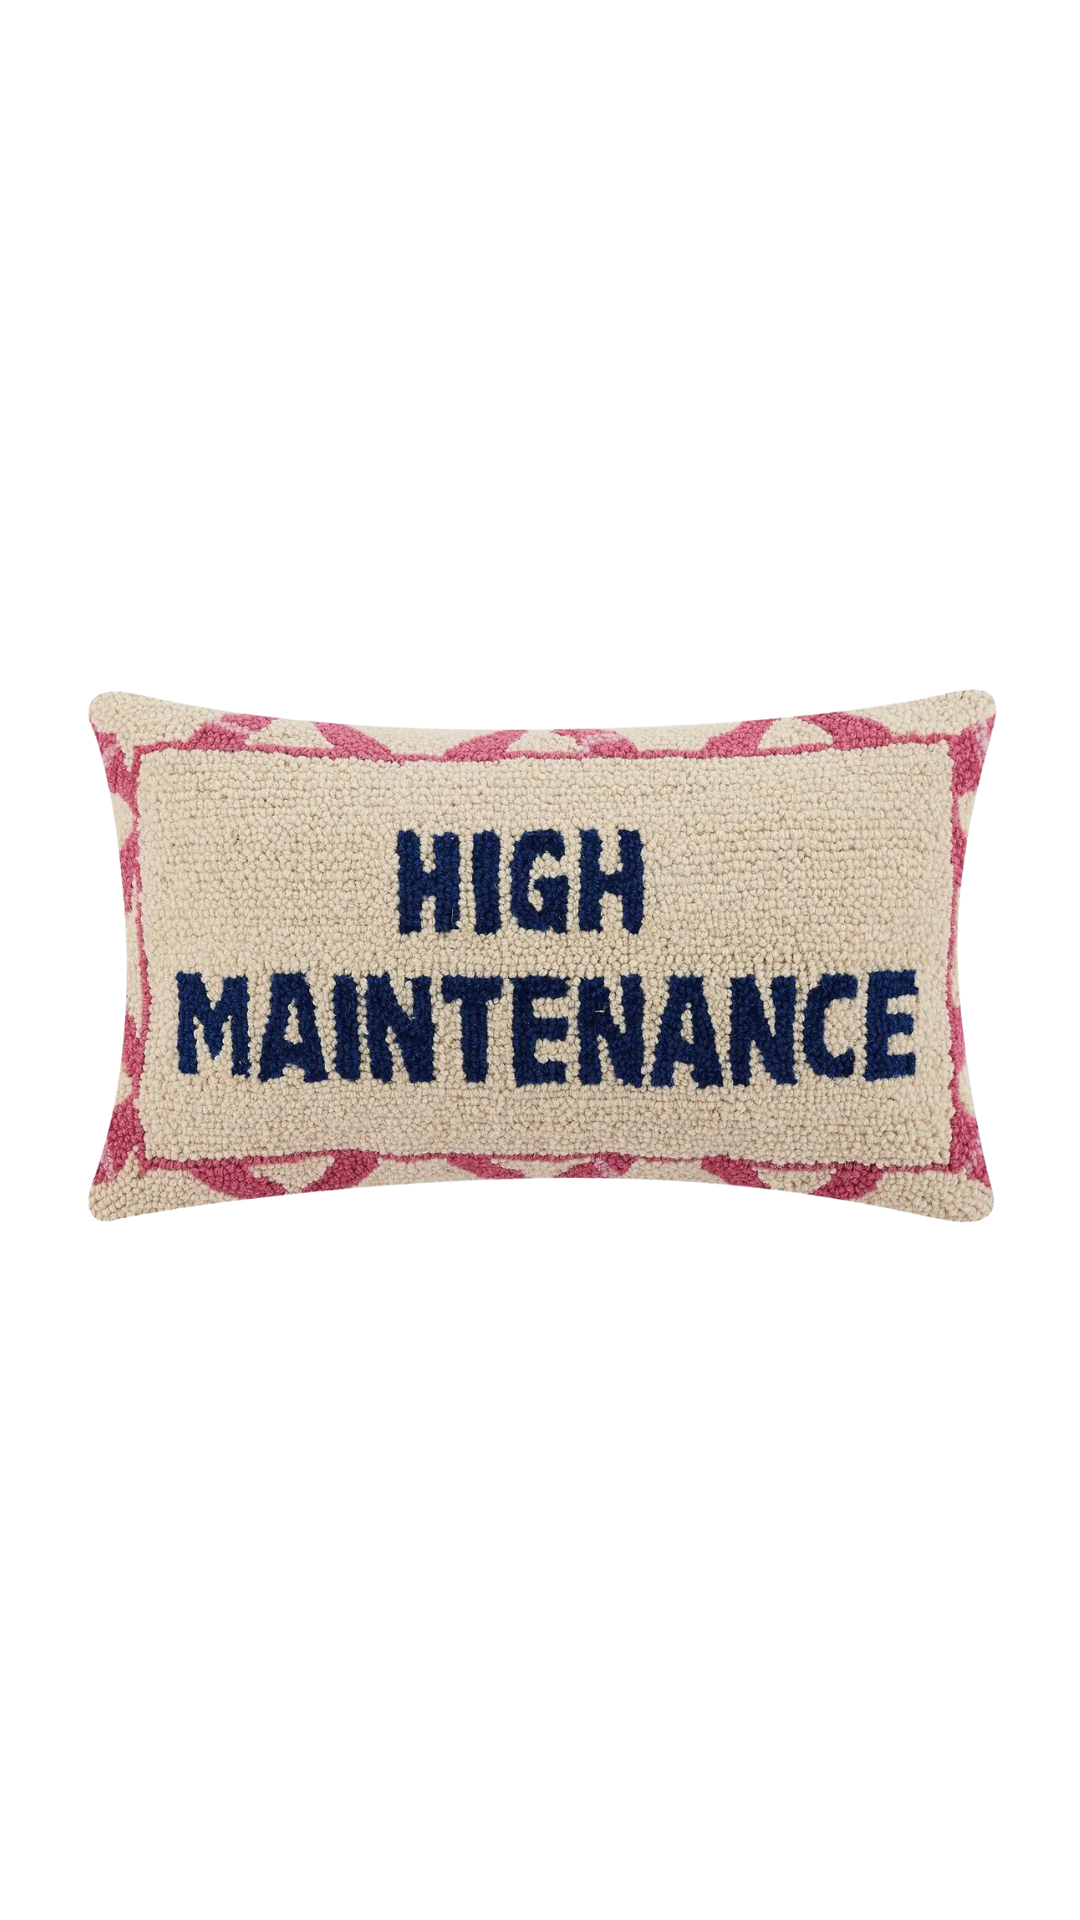 High Maintenance Pillow